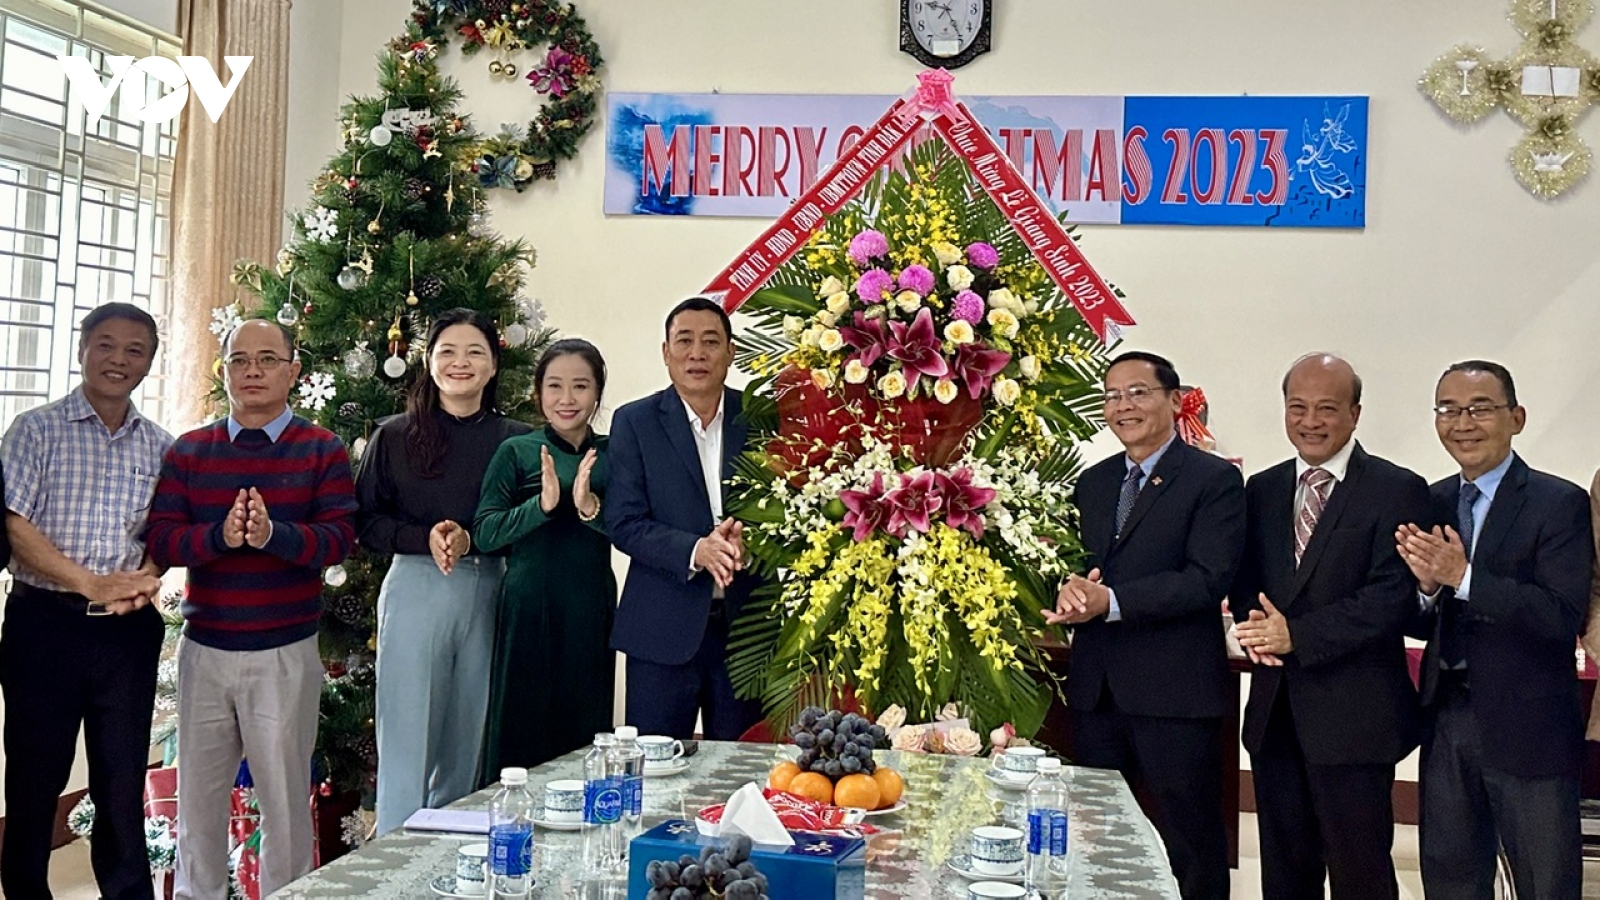 Lãnh đạo tỉnh Đắk Lắk thăm, chúc mừng các cơ sở tôn giáo dịp Lễ Giáng sinh